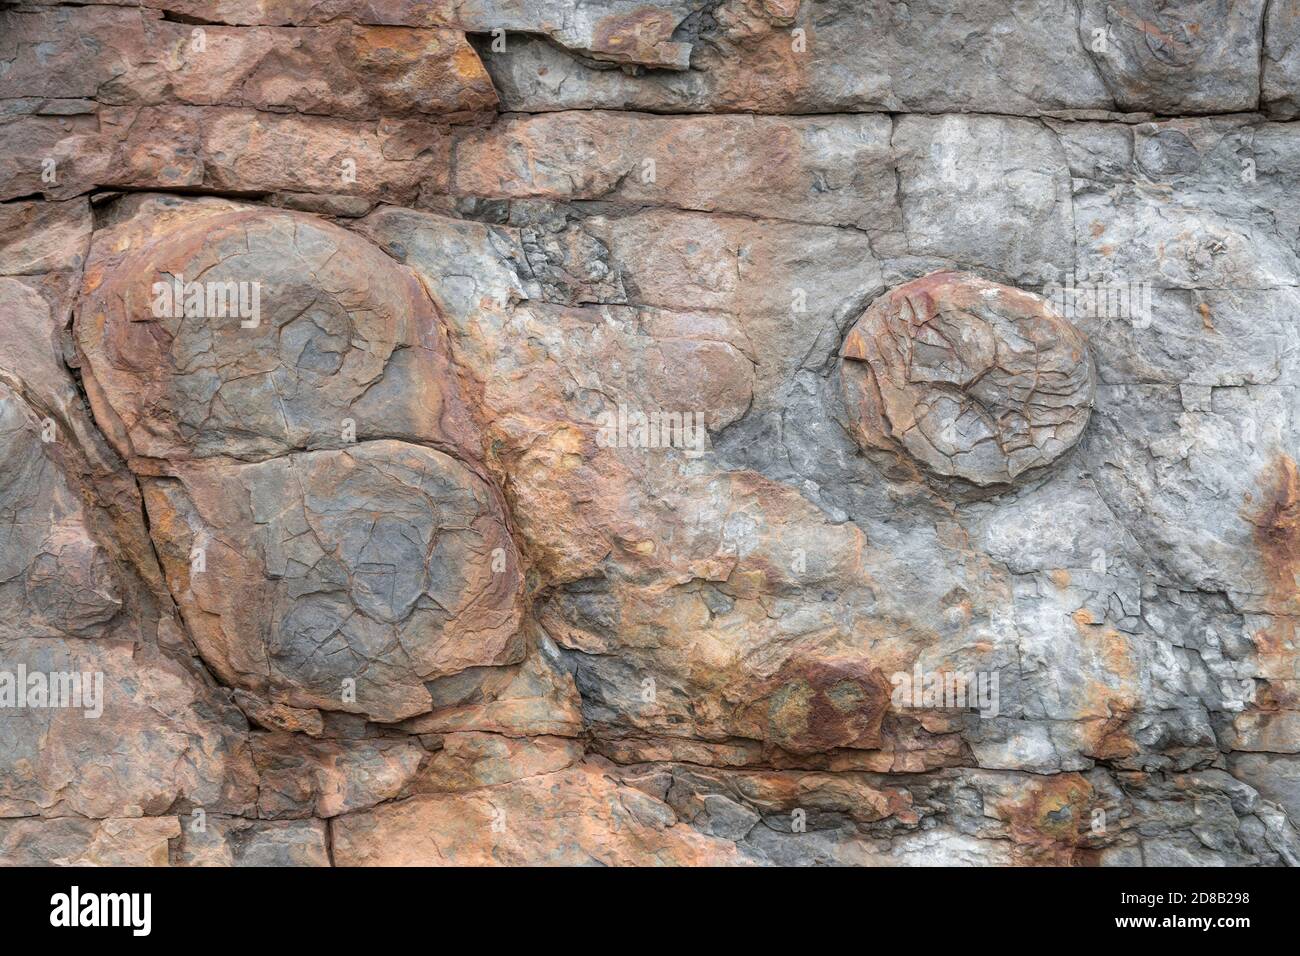 Fossile sul lato di una scogliera. Sono visibili tre fossili di meduse molto intemperati e usurati, uno solo e due insieme. Foto Stock